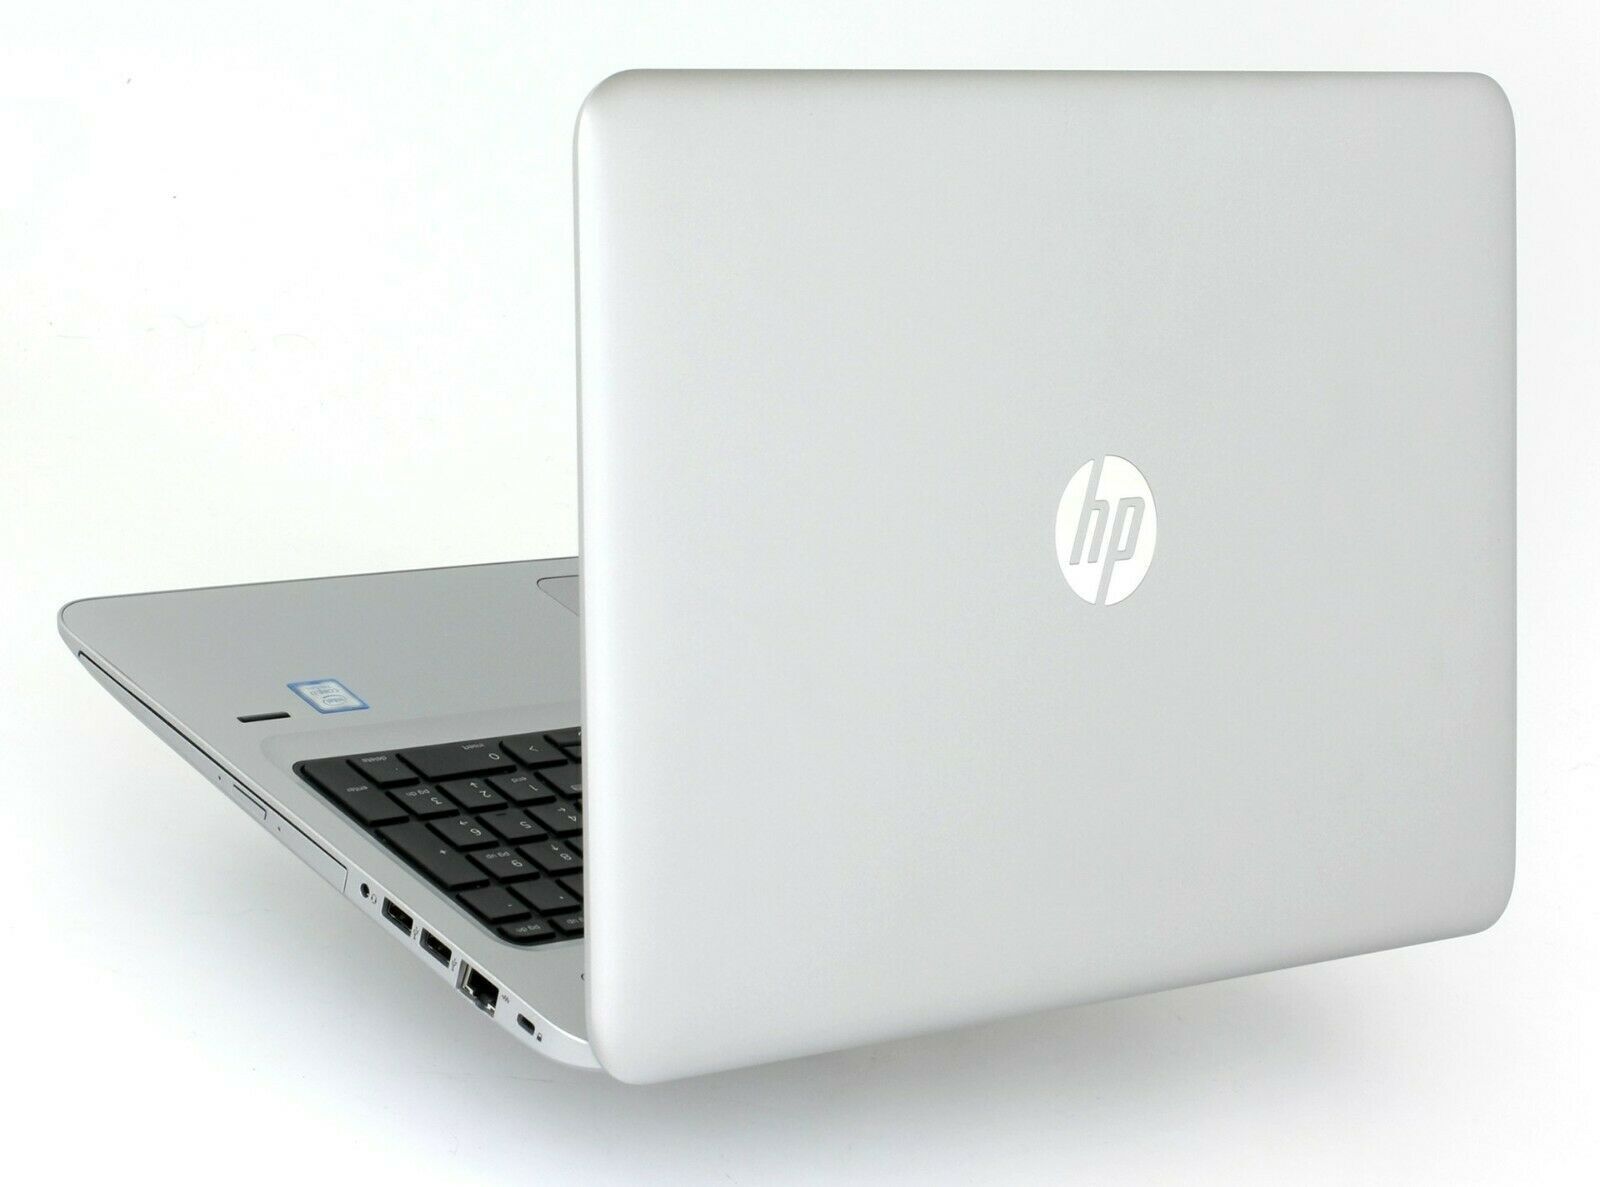 HP ProBook 450 G6 Intel i7 8565u 1.80Ghz 16GB RAM 512GB SSD 15.6" FHD Win 10 - B Grade Image 2